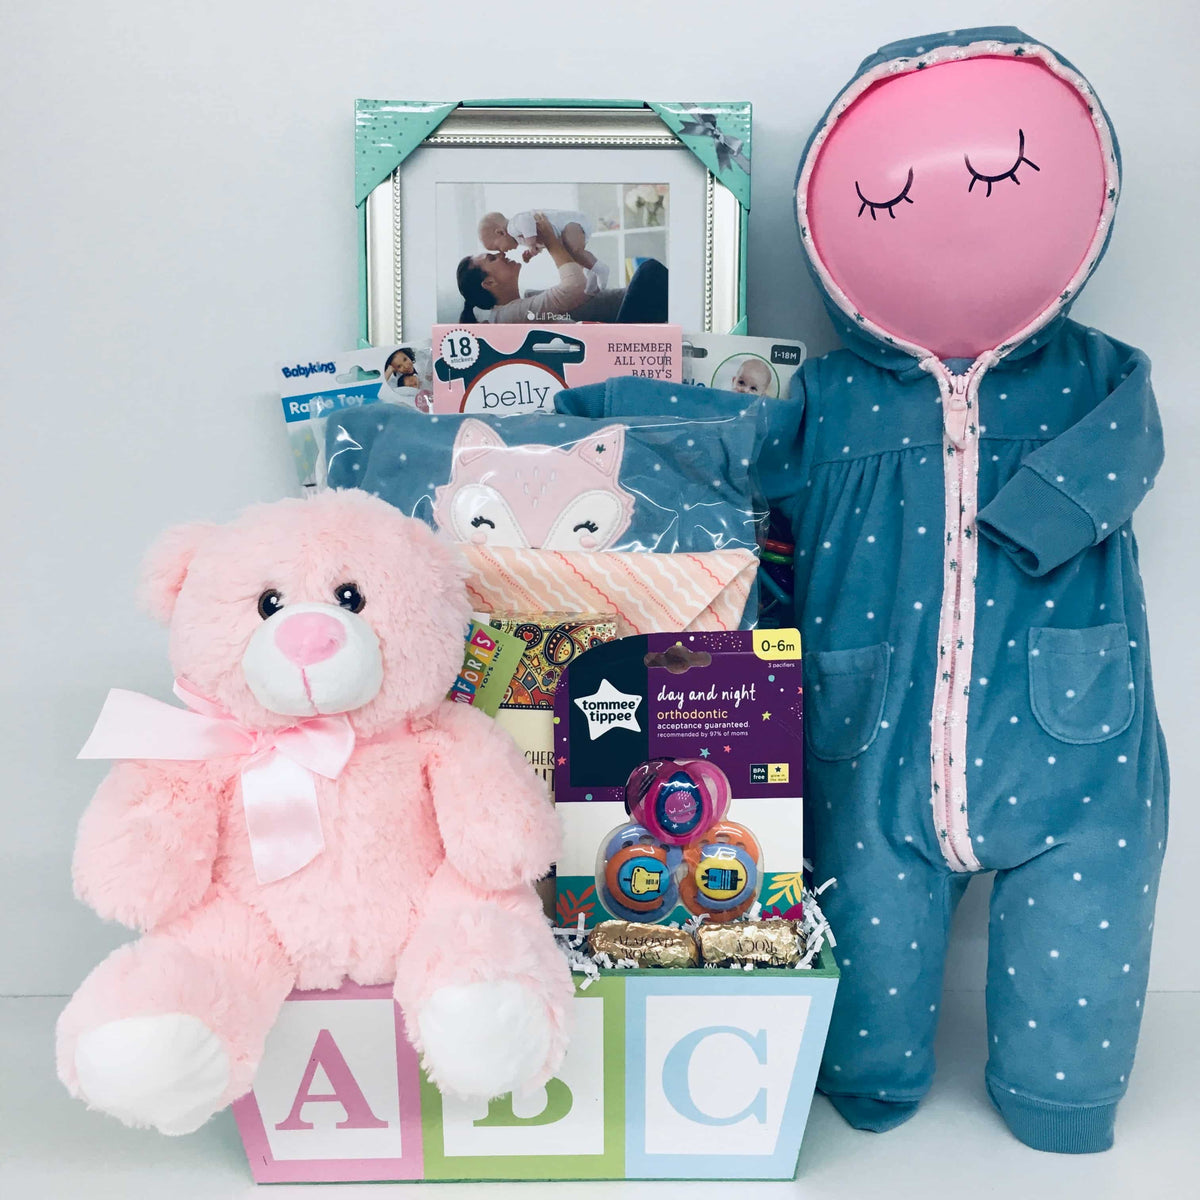 Sleepy Time Baby Gift Basket - Pink